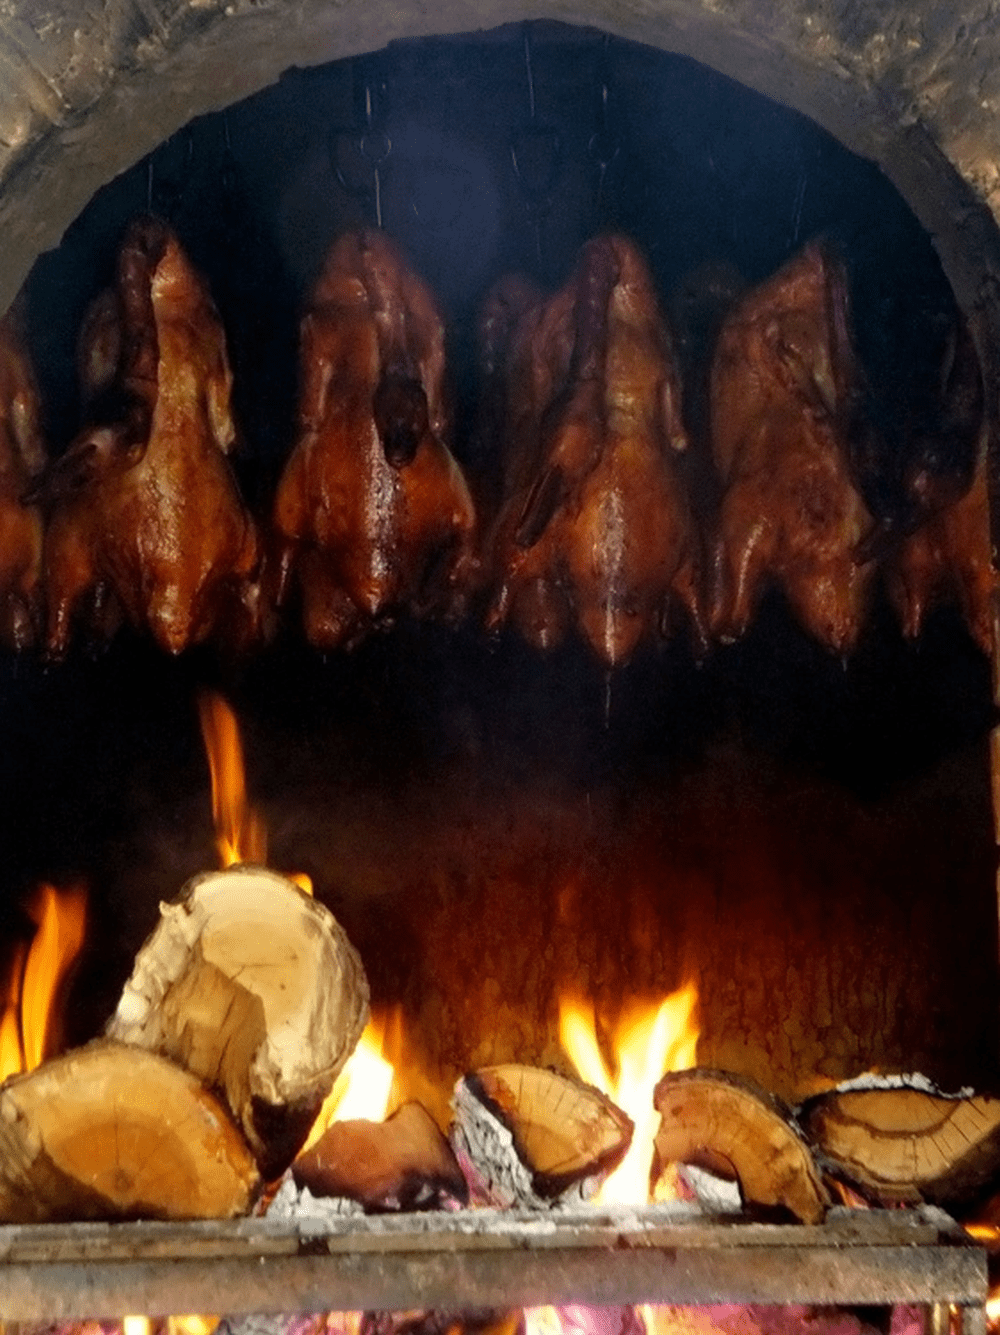 慈禧太后一生最常食用的美食是很寻常的烤鸭。